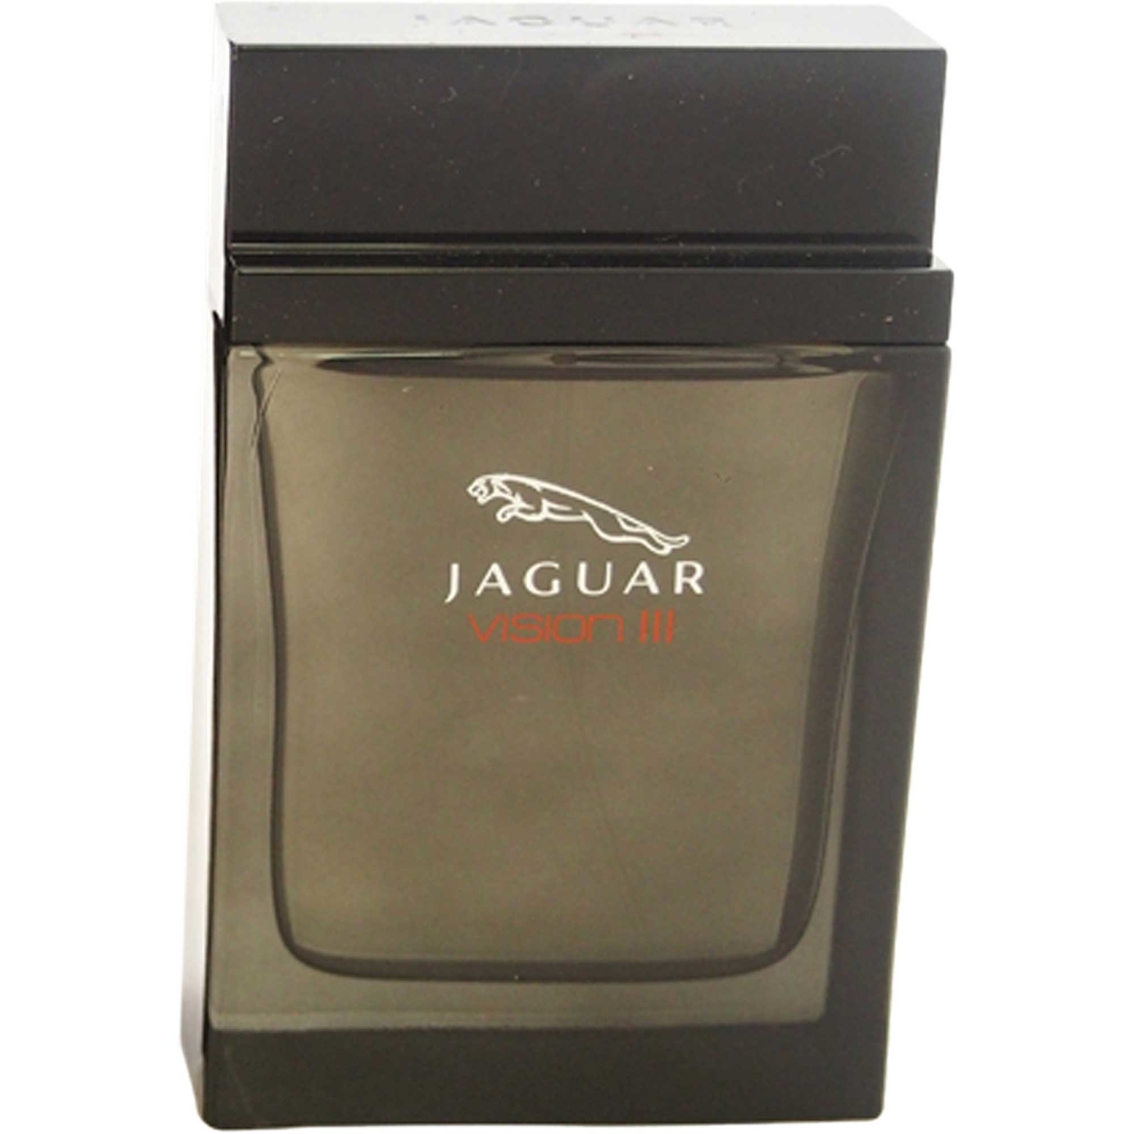 Jaguar Vision III by Jaguar for Men Eau de Toilette Spray 3.4 oz.